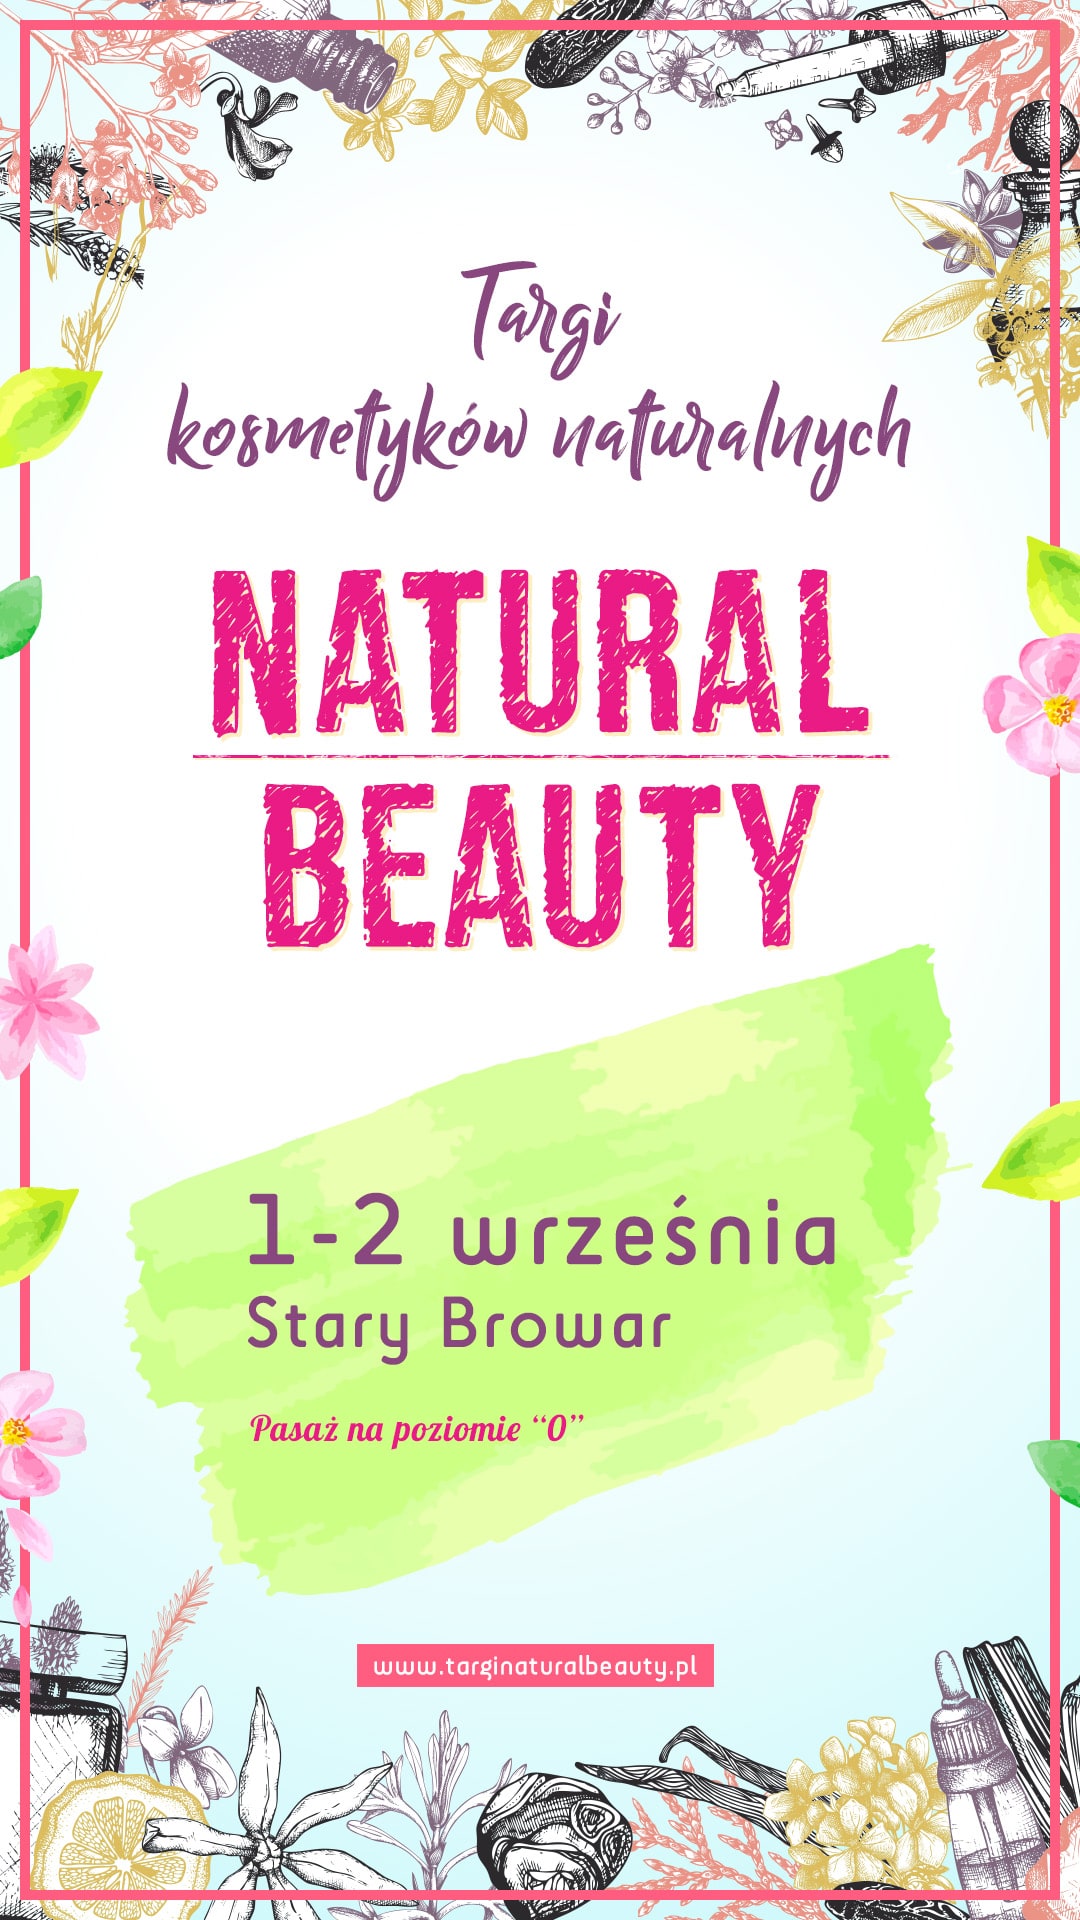 Targi Natural Beauty już niebawem w Poznaniu!